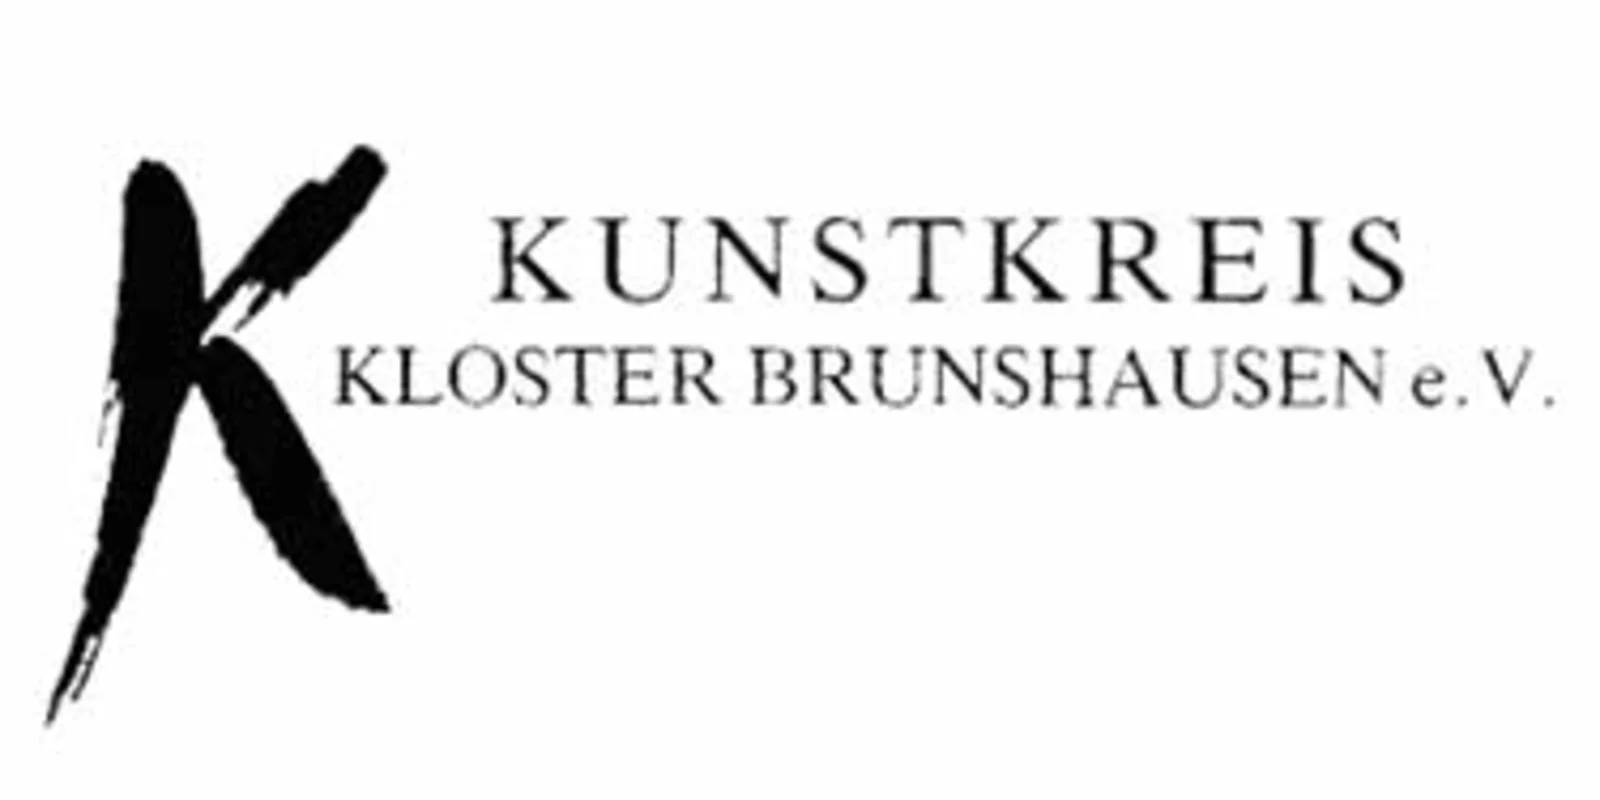 Kunstkreis Kloster brunshausen